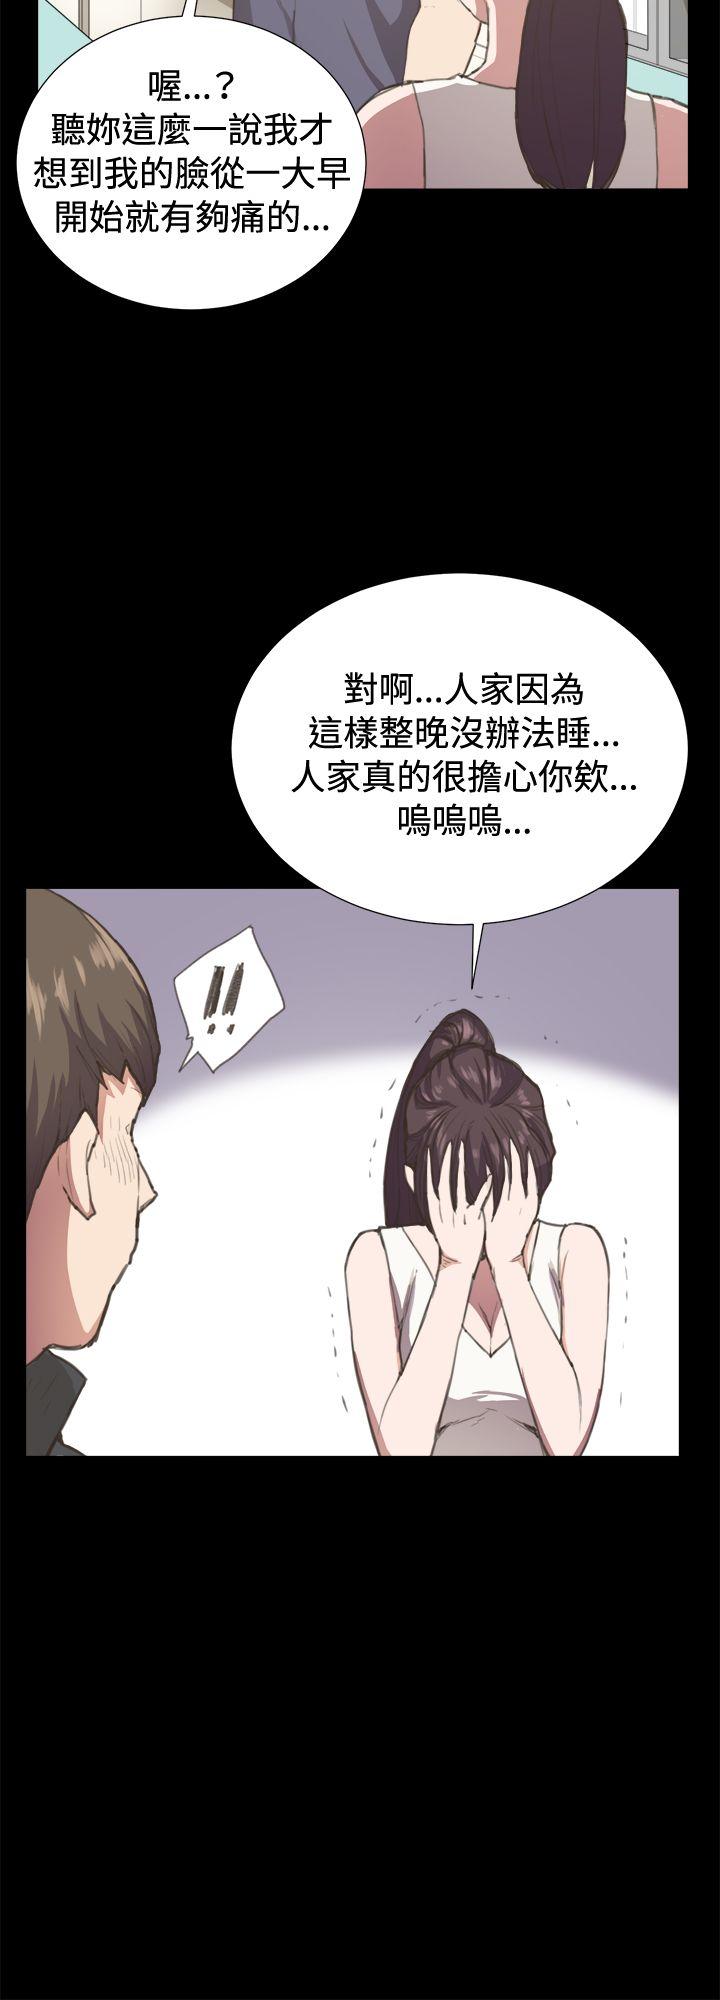 韩国污漫画 深夜便利店 第6话 24